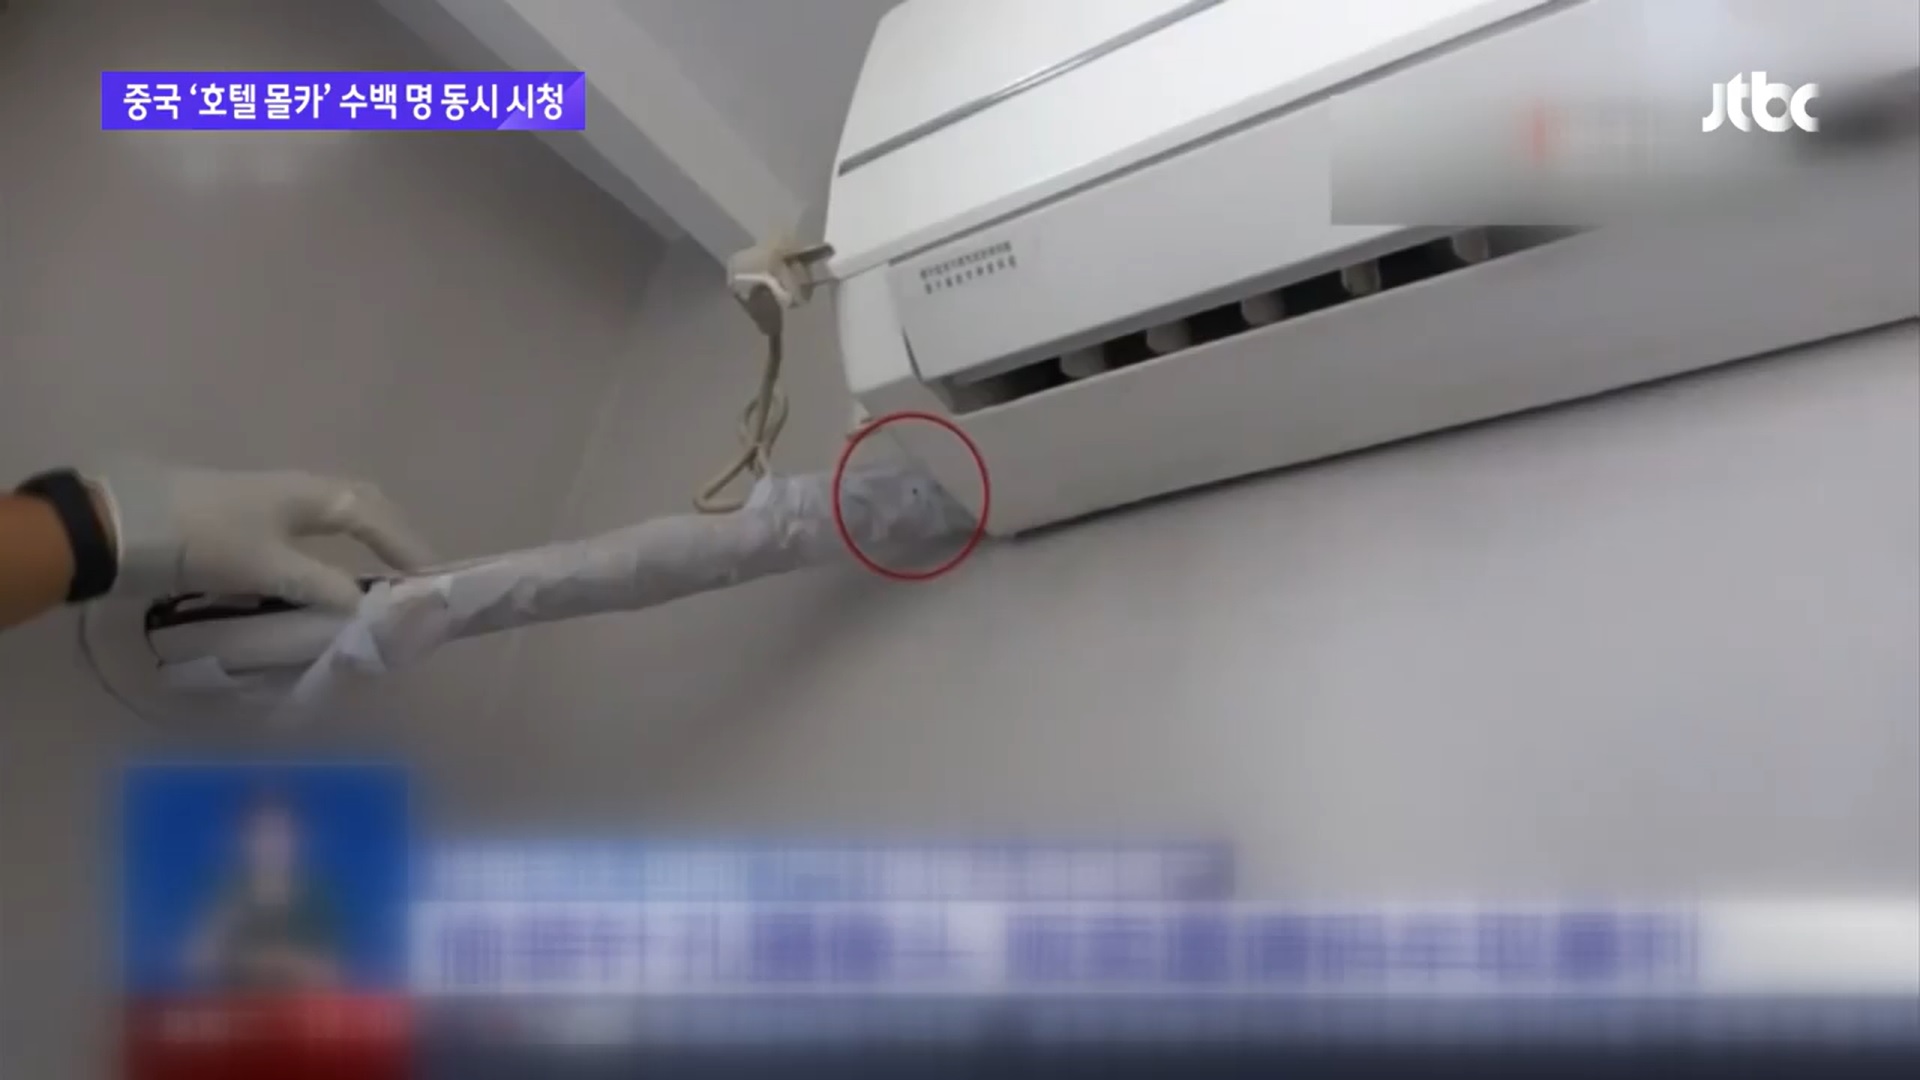 호텔 방 불법촬영 영상을 수백명이 동시에 볼 수 있도록 한 범죄가 중국에서 버젓이 벌어졌다. JTBC 보도 캡처